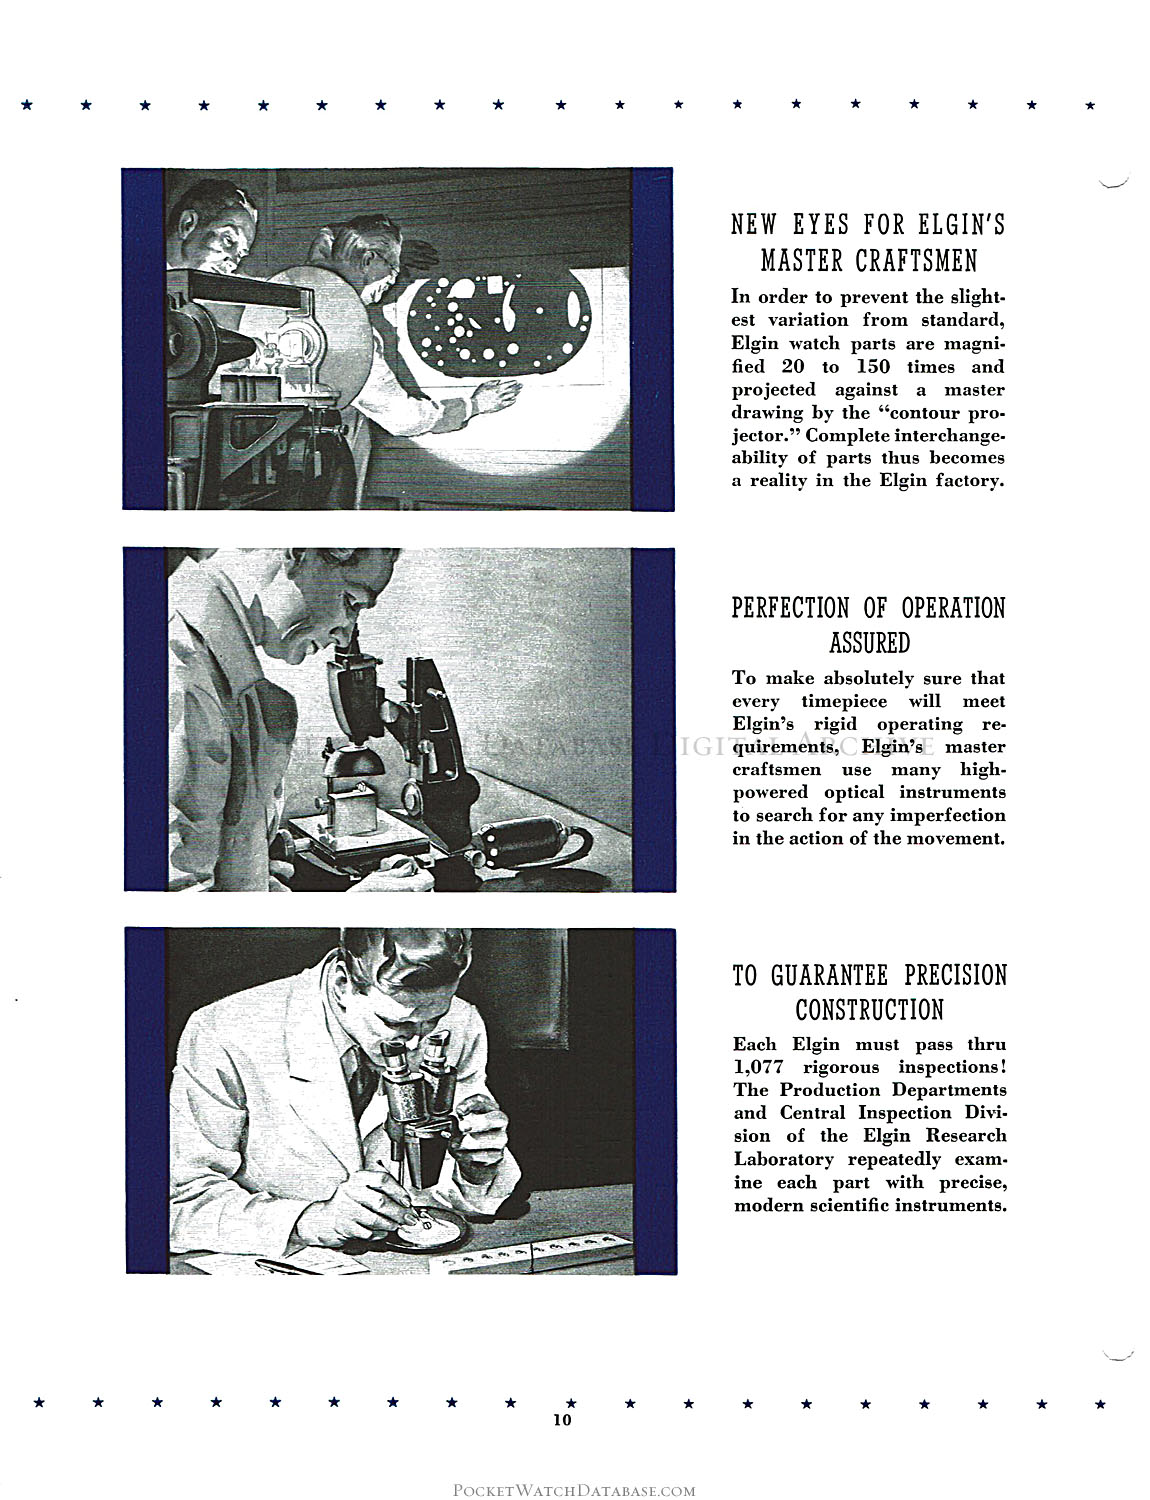 Watch Lubrication - Elgin Service Bulletin (c.1940) | PWDB Digital 